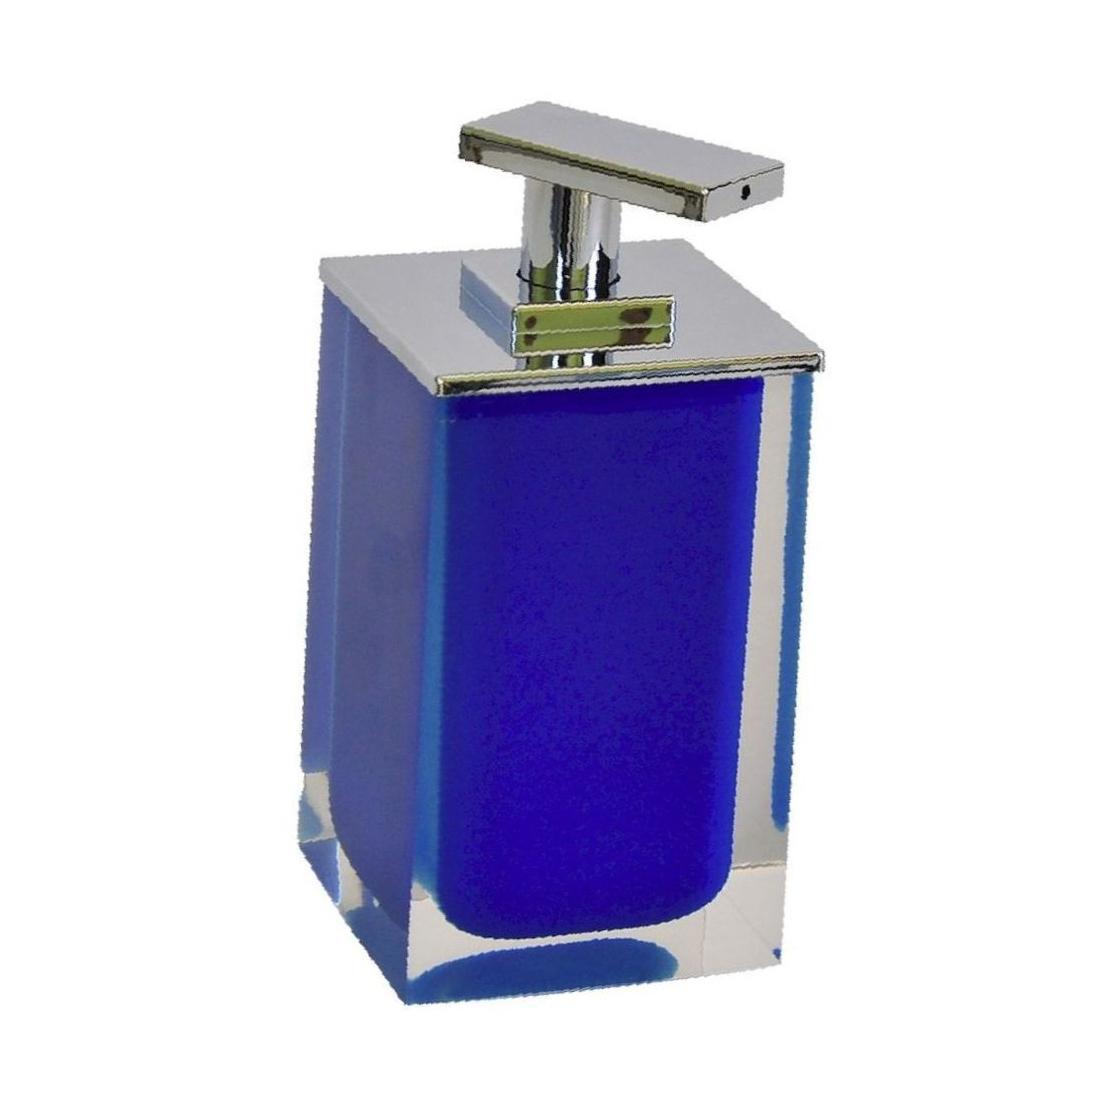 90446814 Дозатор для жидкого мыла 22280503 цвет синий STLM-0225759 RIDDER